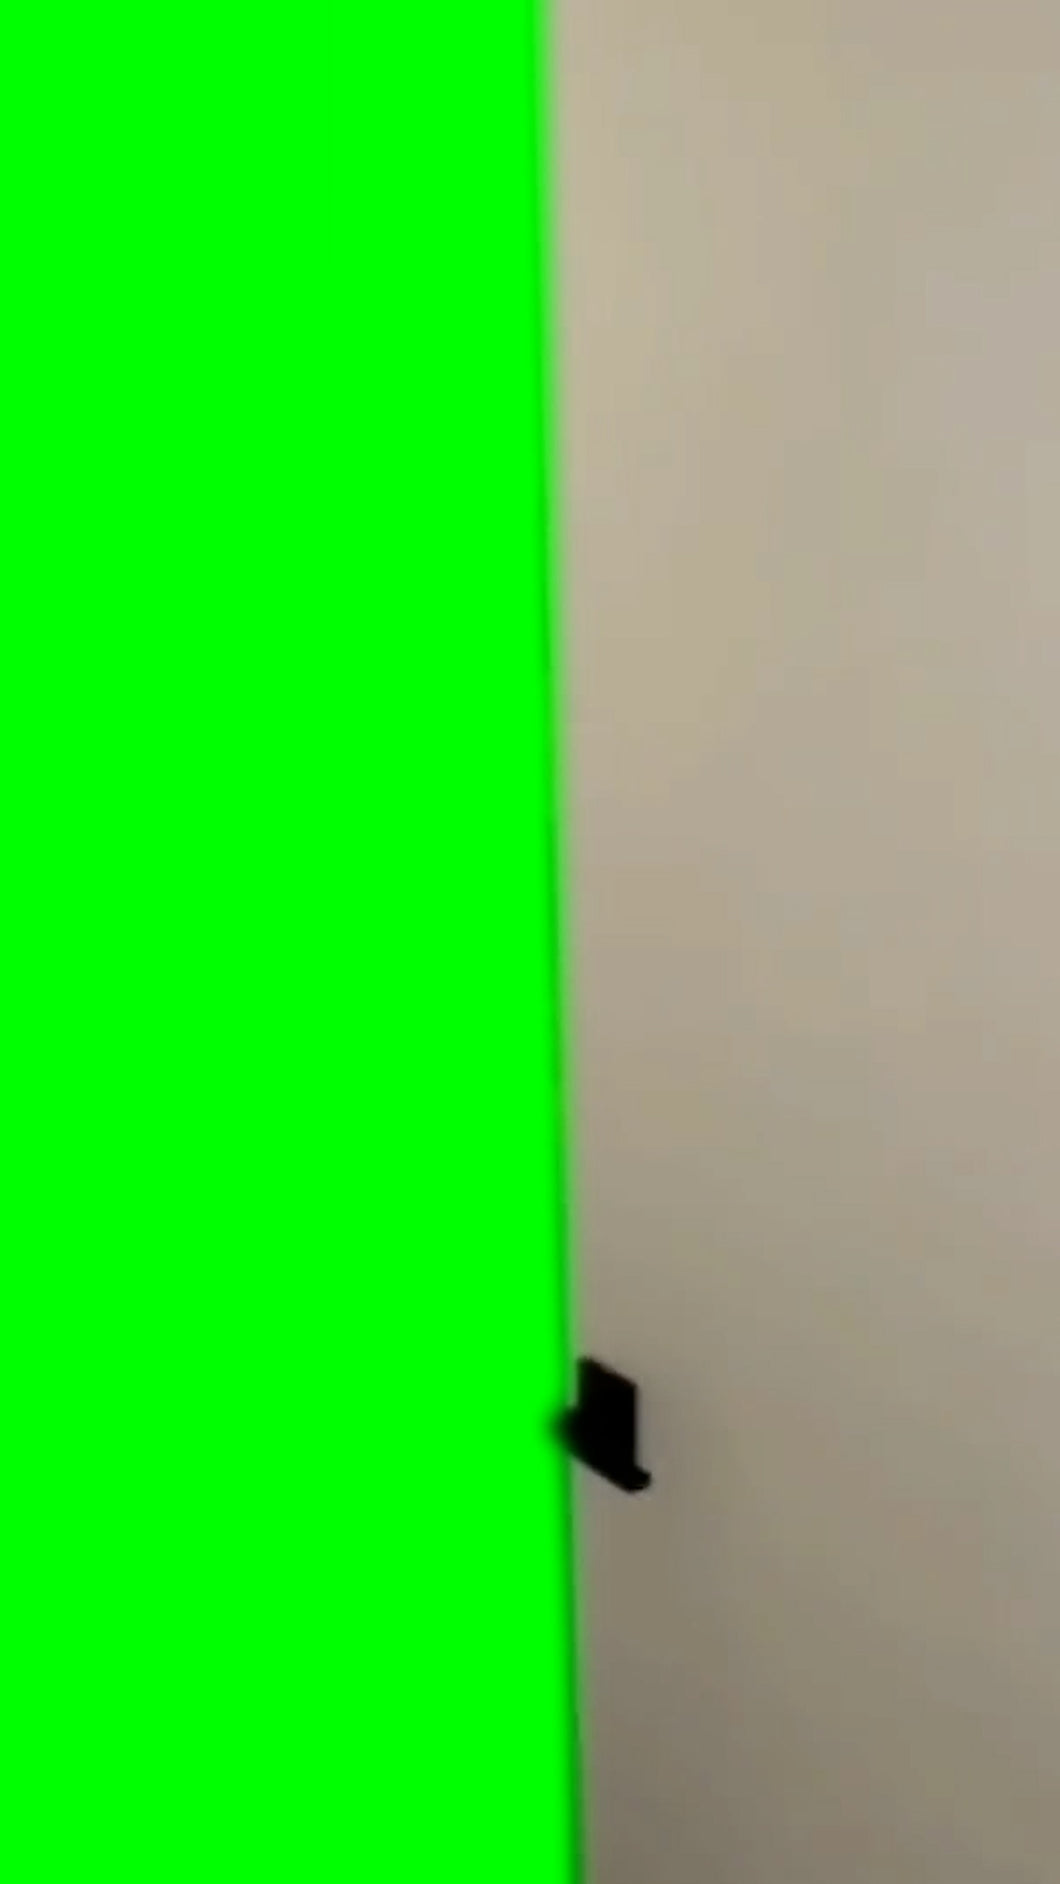 Door Opening (Green Screen)